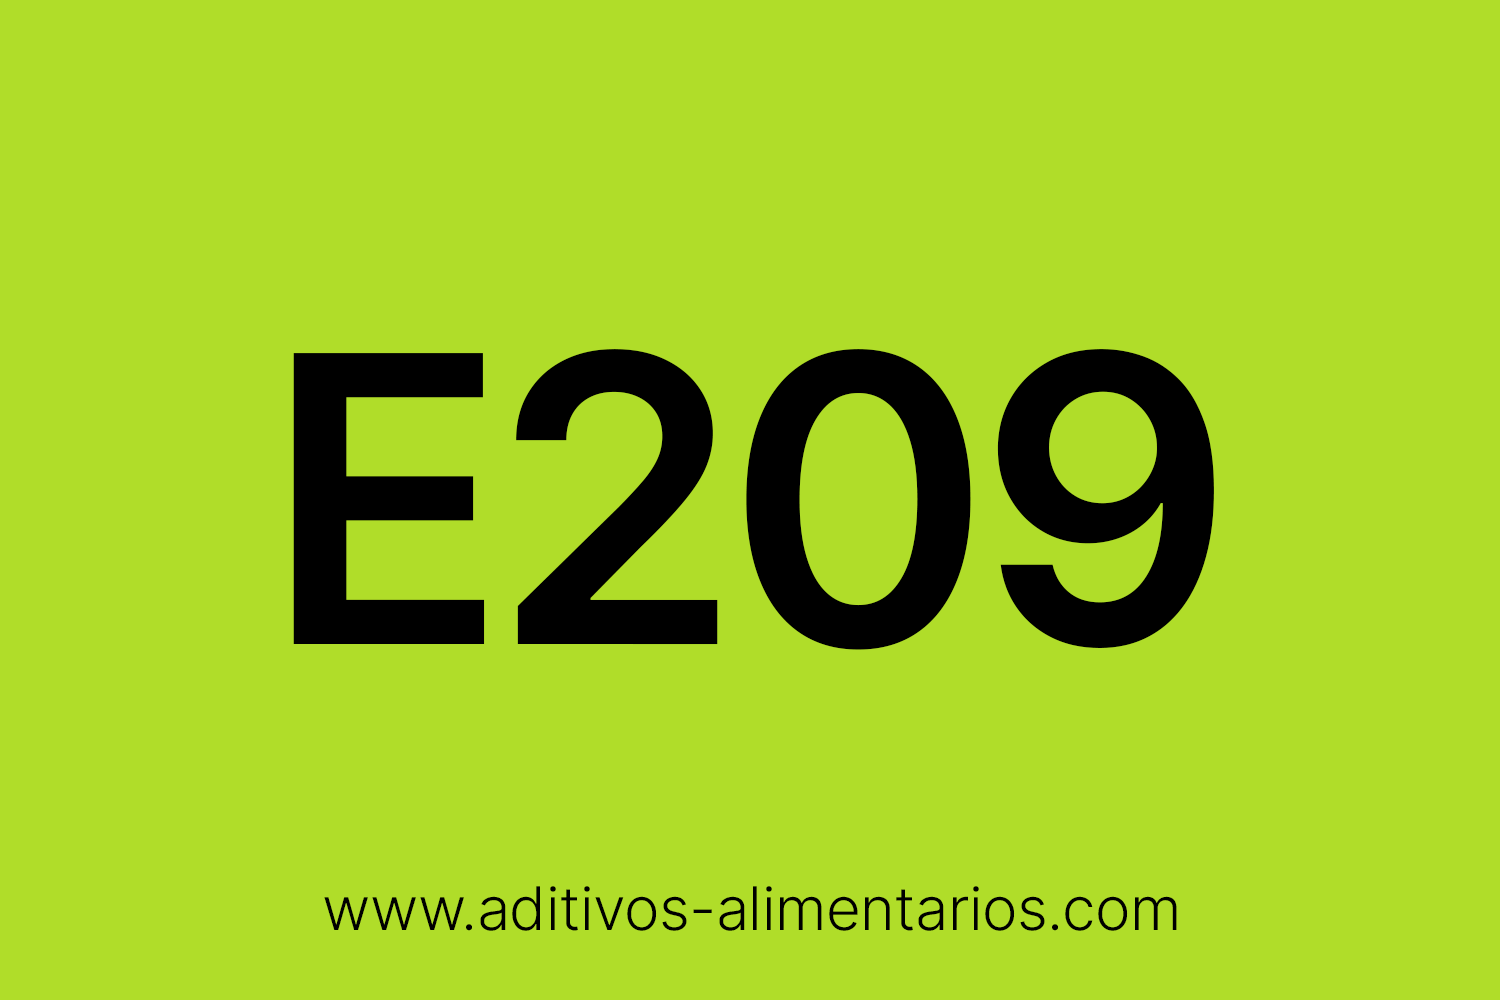 Aditivo Alimentario - E209 - Para-Hidroxibenzoato de Heptilo